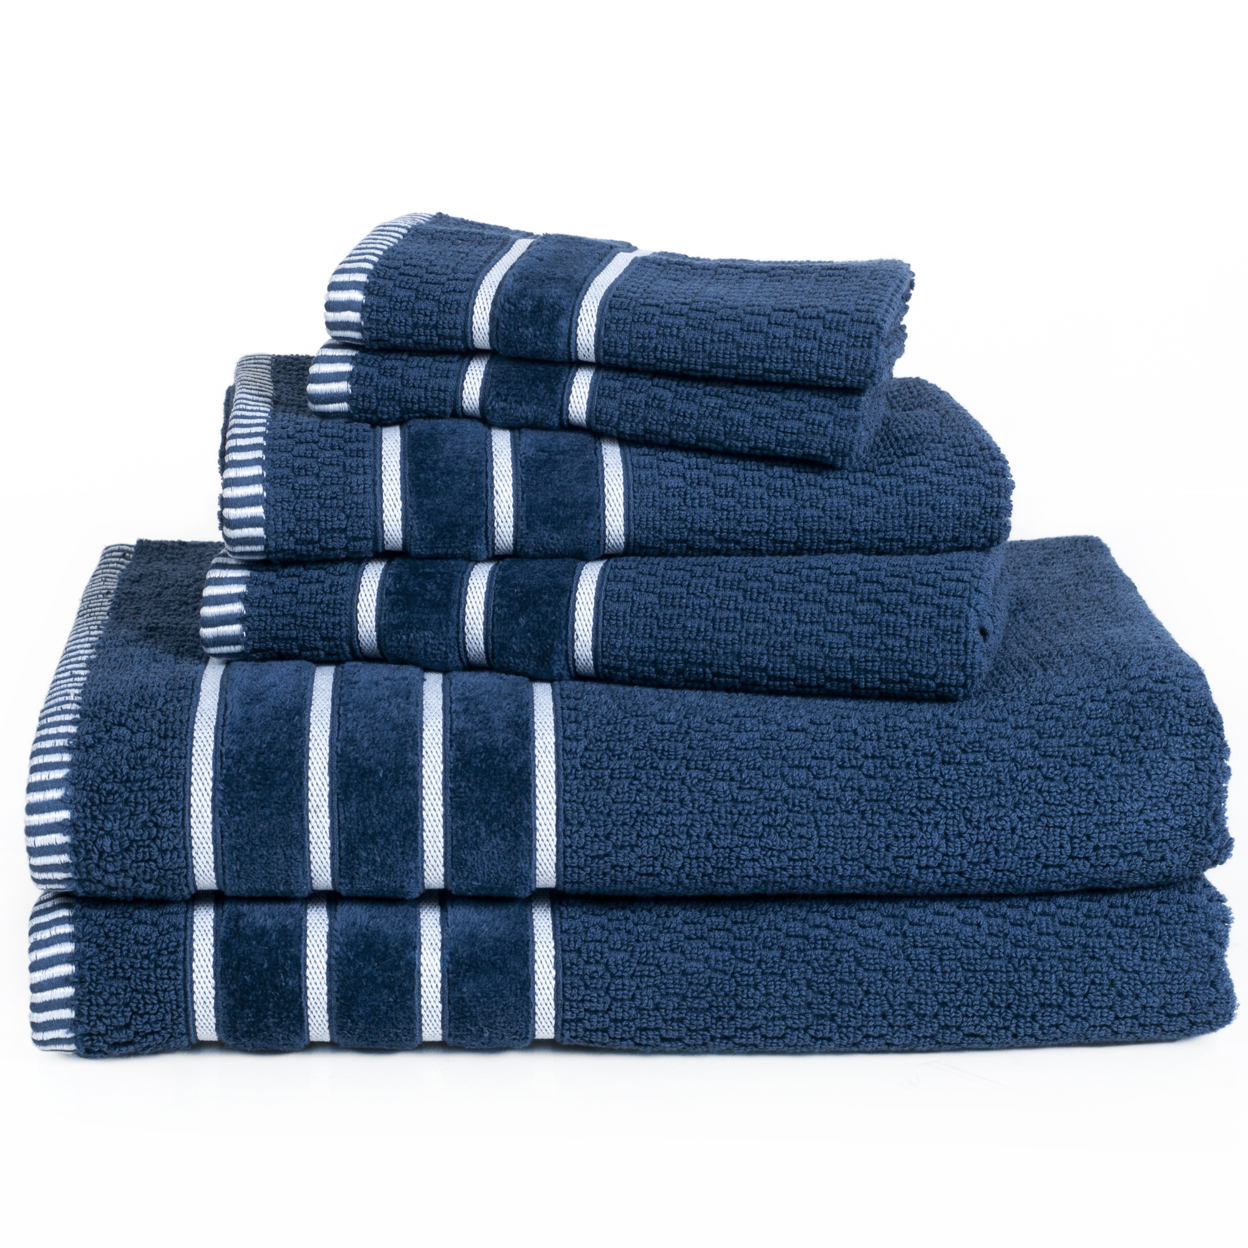 Lavish Home 100% Cotton Rice Weave 6 Piece Towel Set - Navy